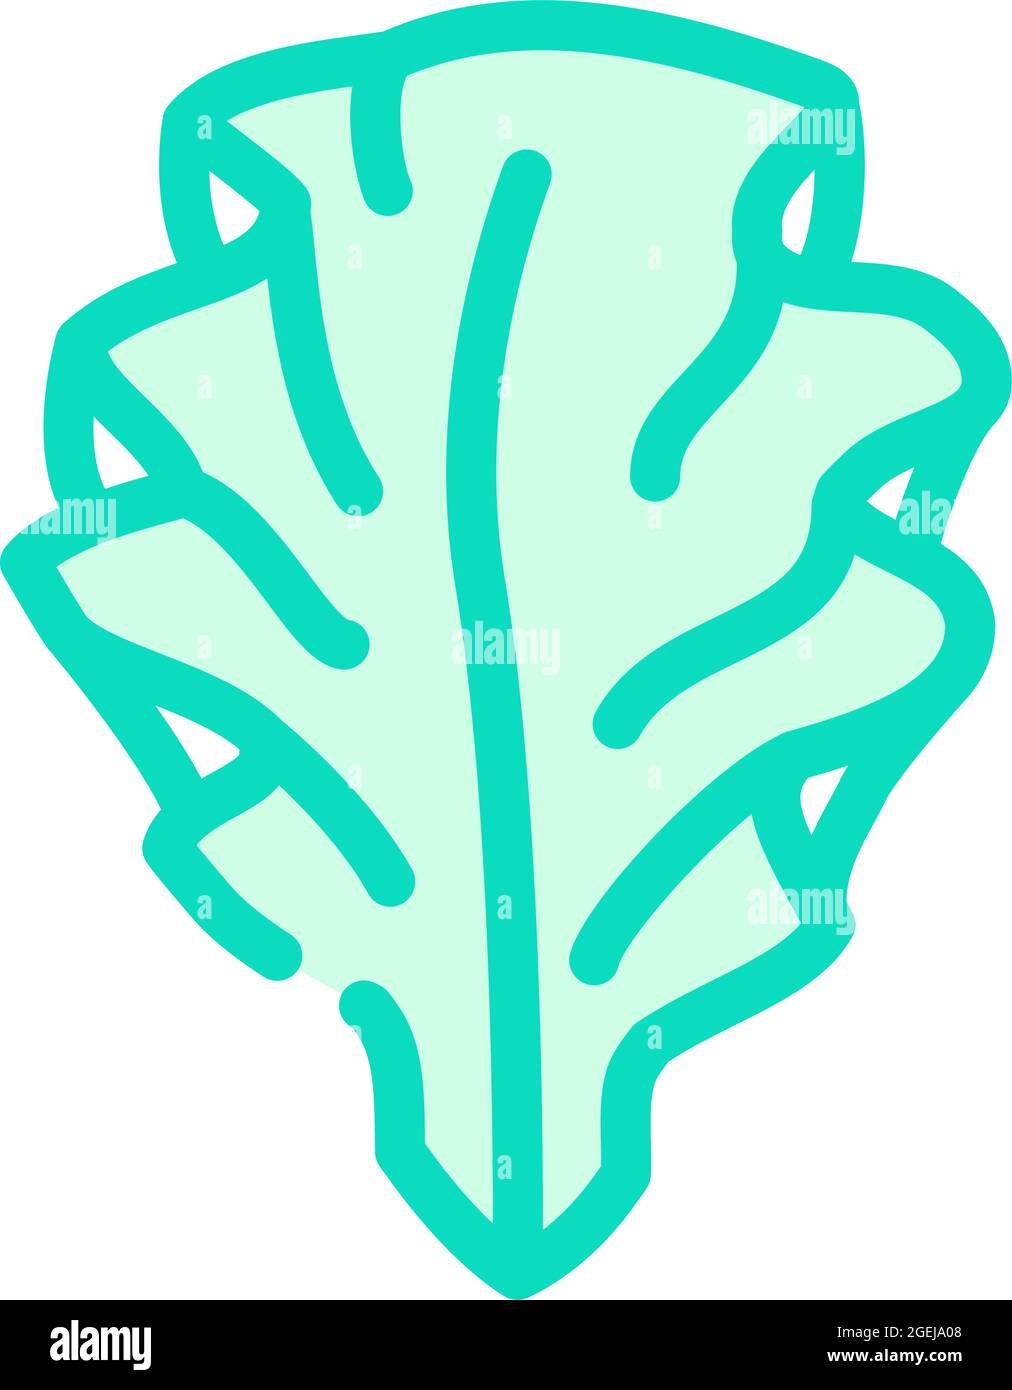 immagine vettoriale dell'icona delle alghe di ulva lattuga Illustrazione Vettoriale